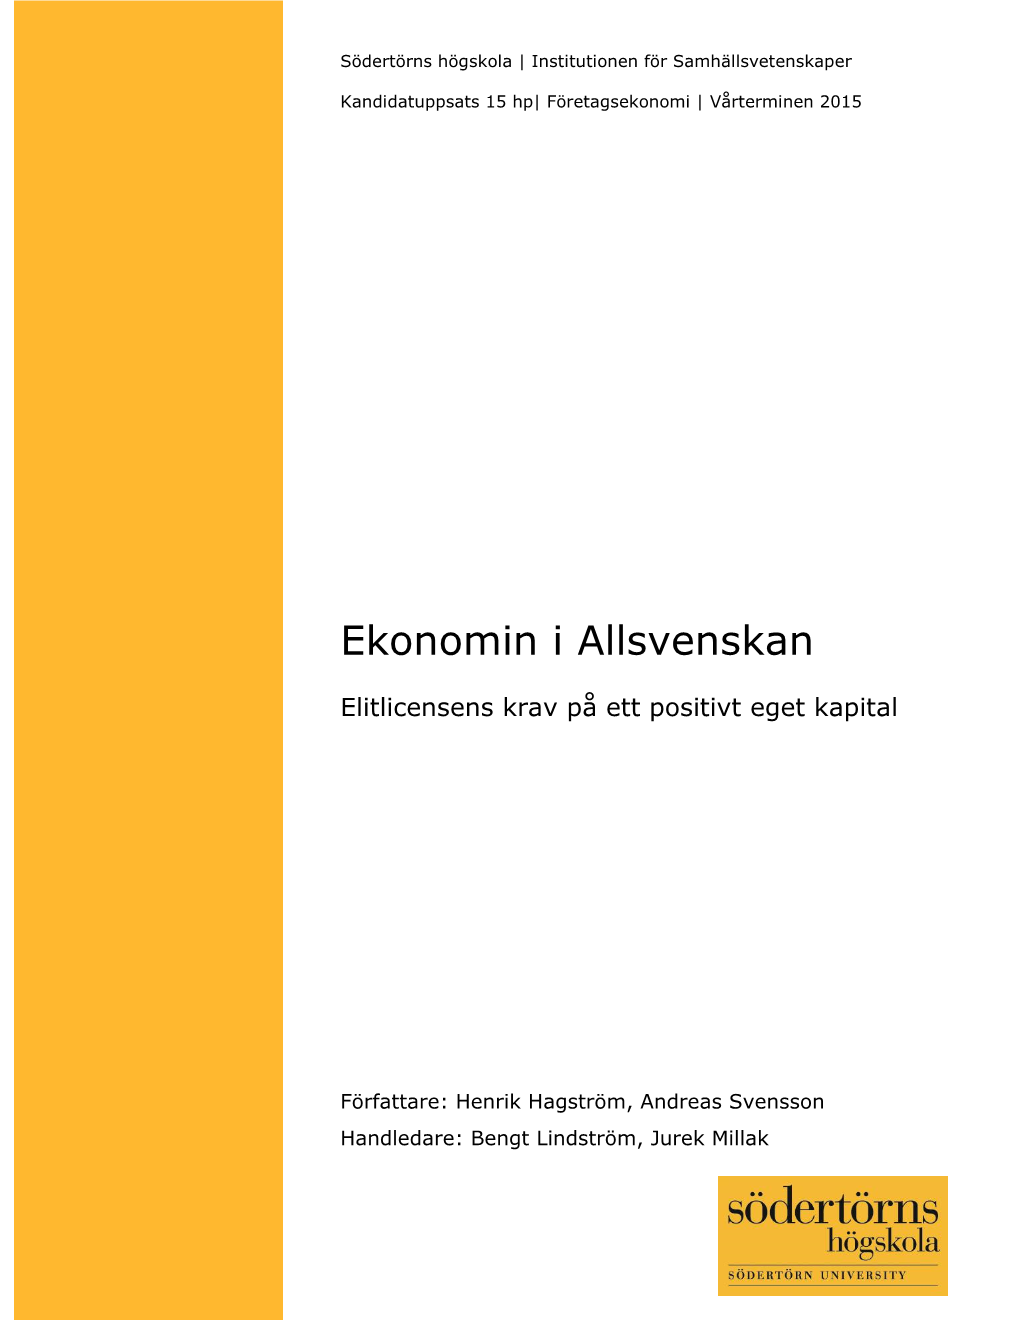 Ekonomin I Allsvenskan